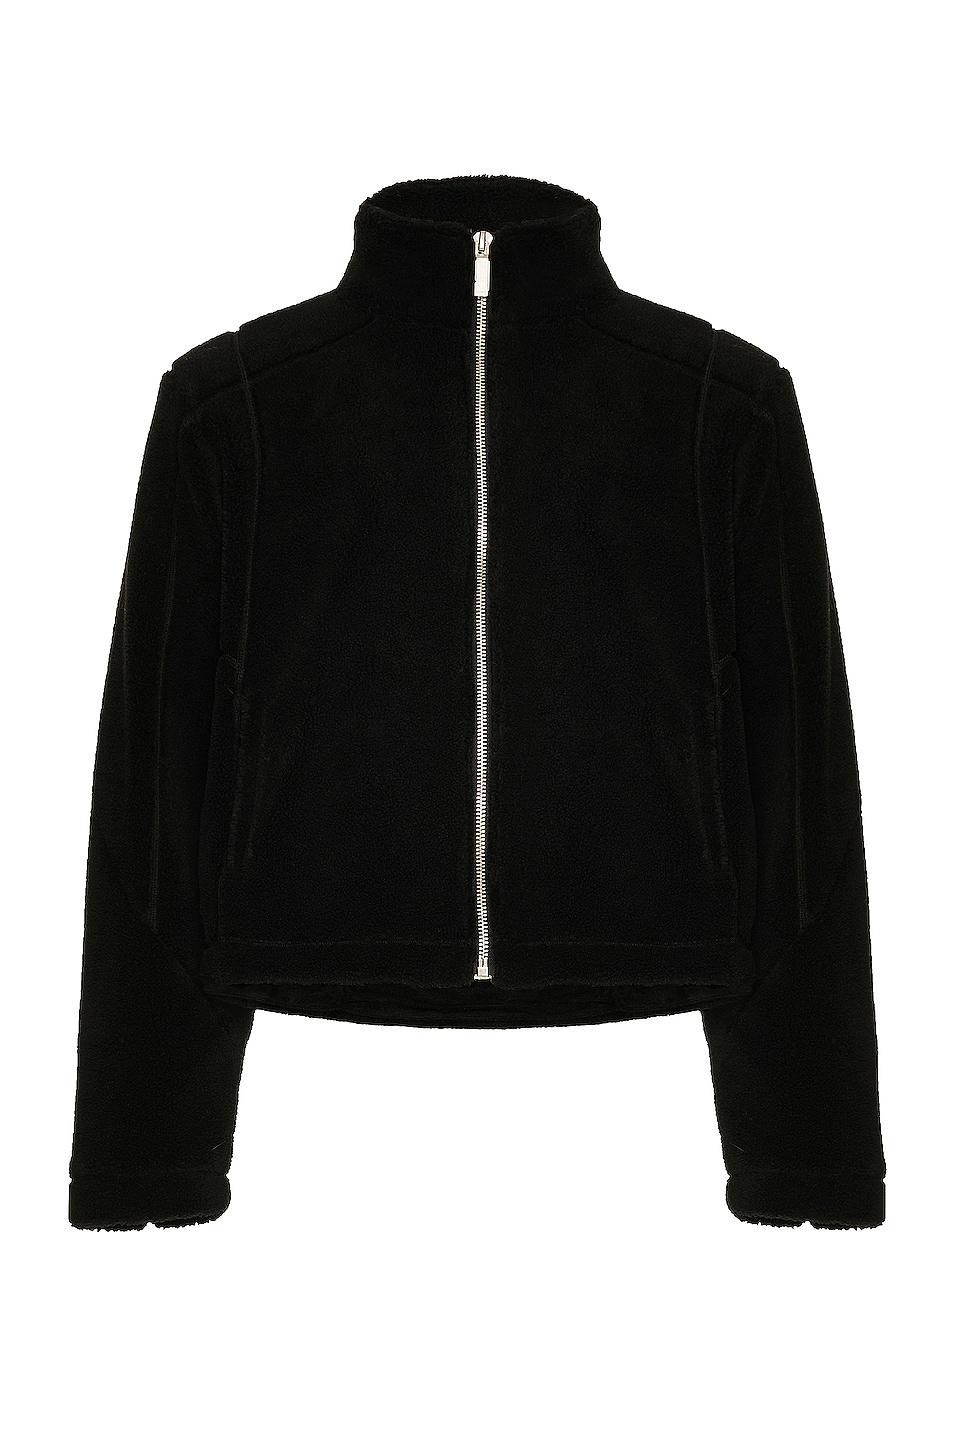 C2H4 Intervein Stitch Fleece Jacket in Black for Men | Lyst UK